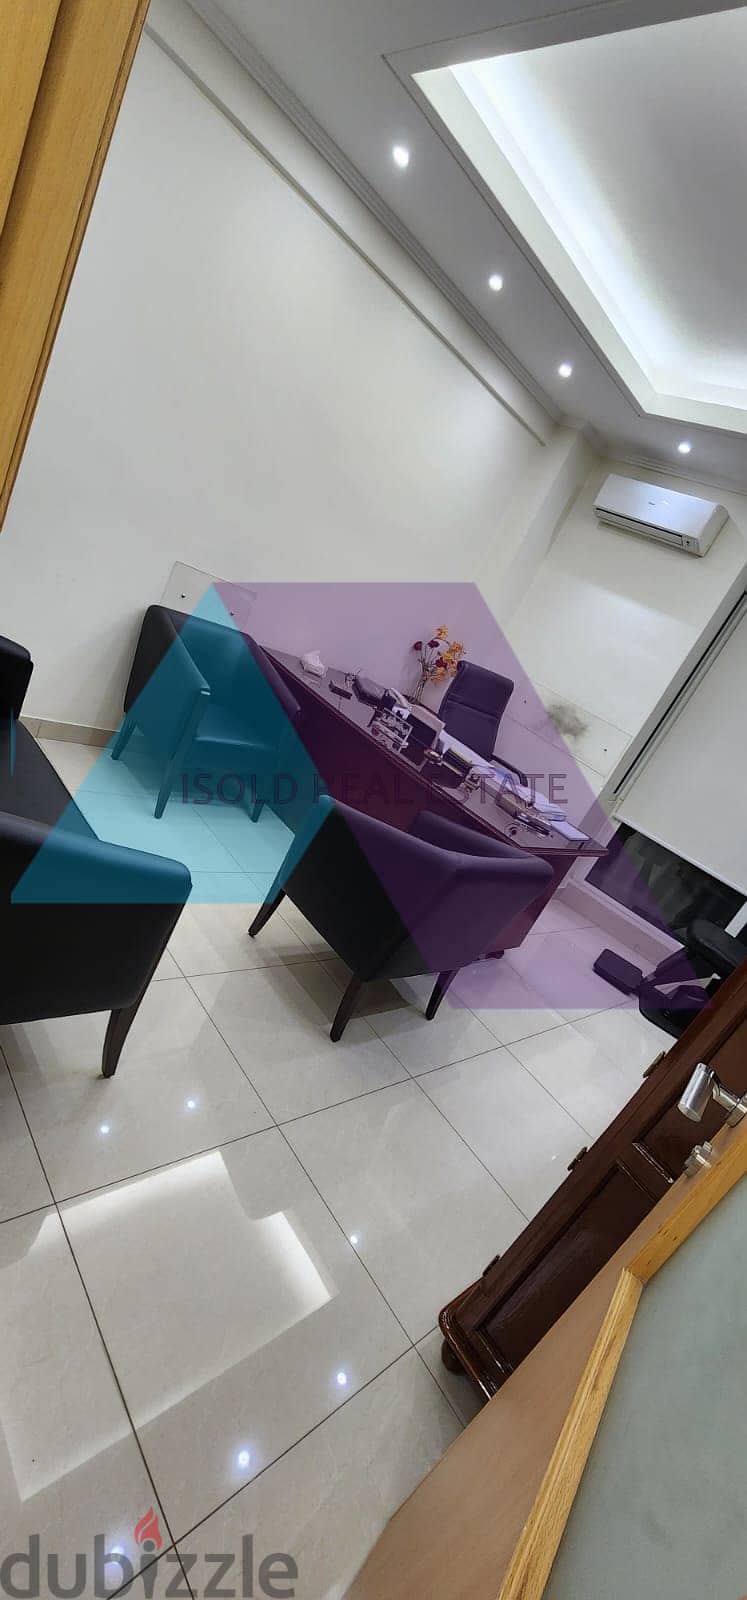 A 130 m2 apartment for sale in Mar Elias - شقة للبيع في مار الياس 6